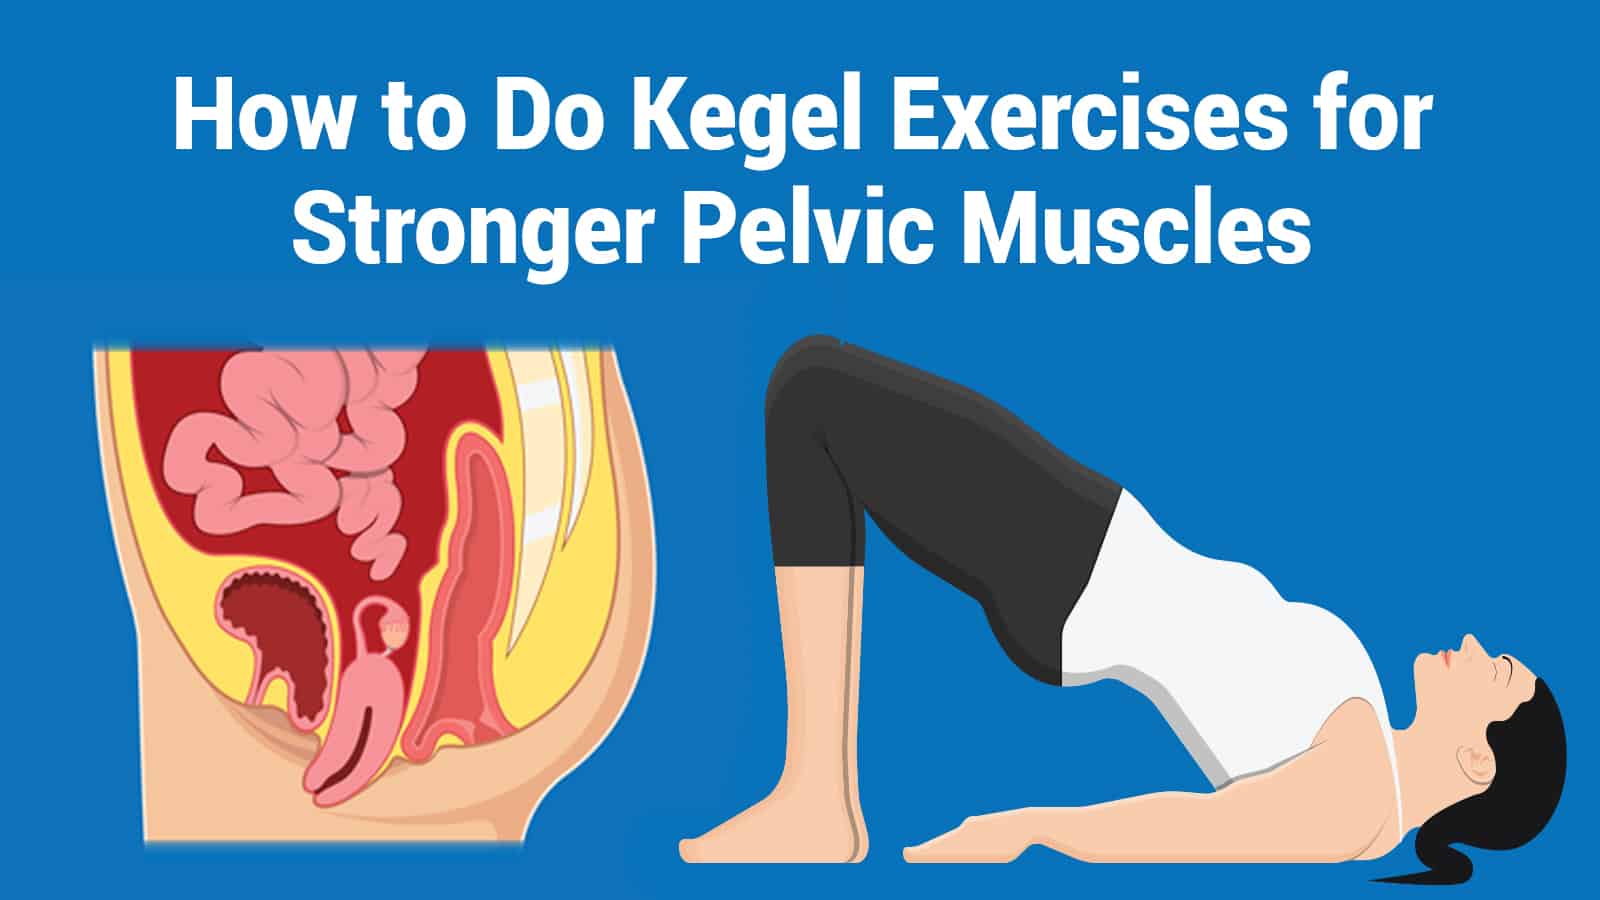 How to Do Kegel Exercises for Stronger Pelvic Muscles